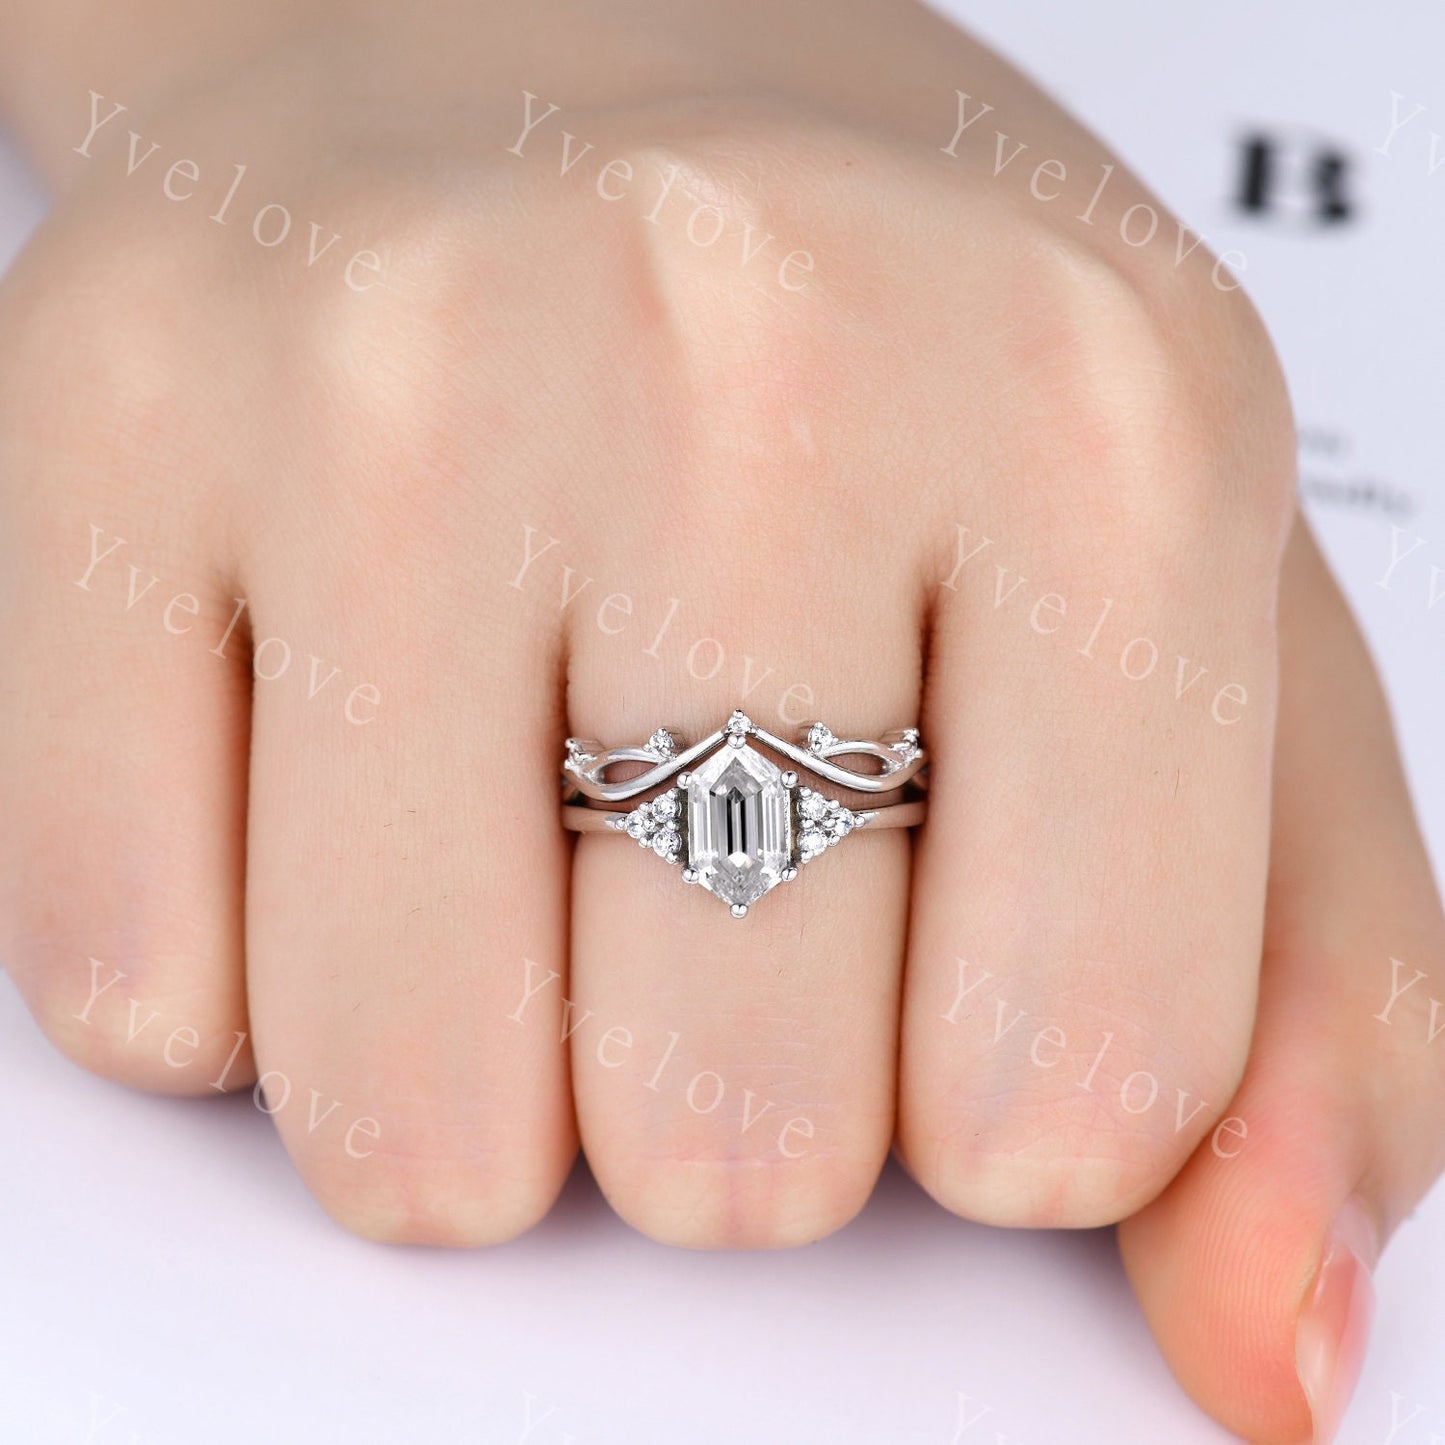 Retro hexagon Moissanite Ring,Vintage Moissanite Ring Set,Unique Diamond Engagement Ring,Promise Ring,Anniversary Ring Gift For Her,Platinum